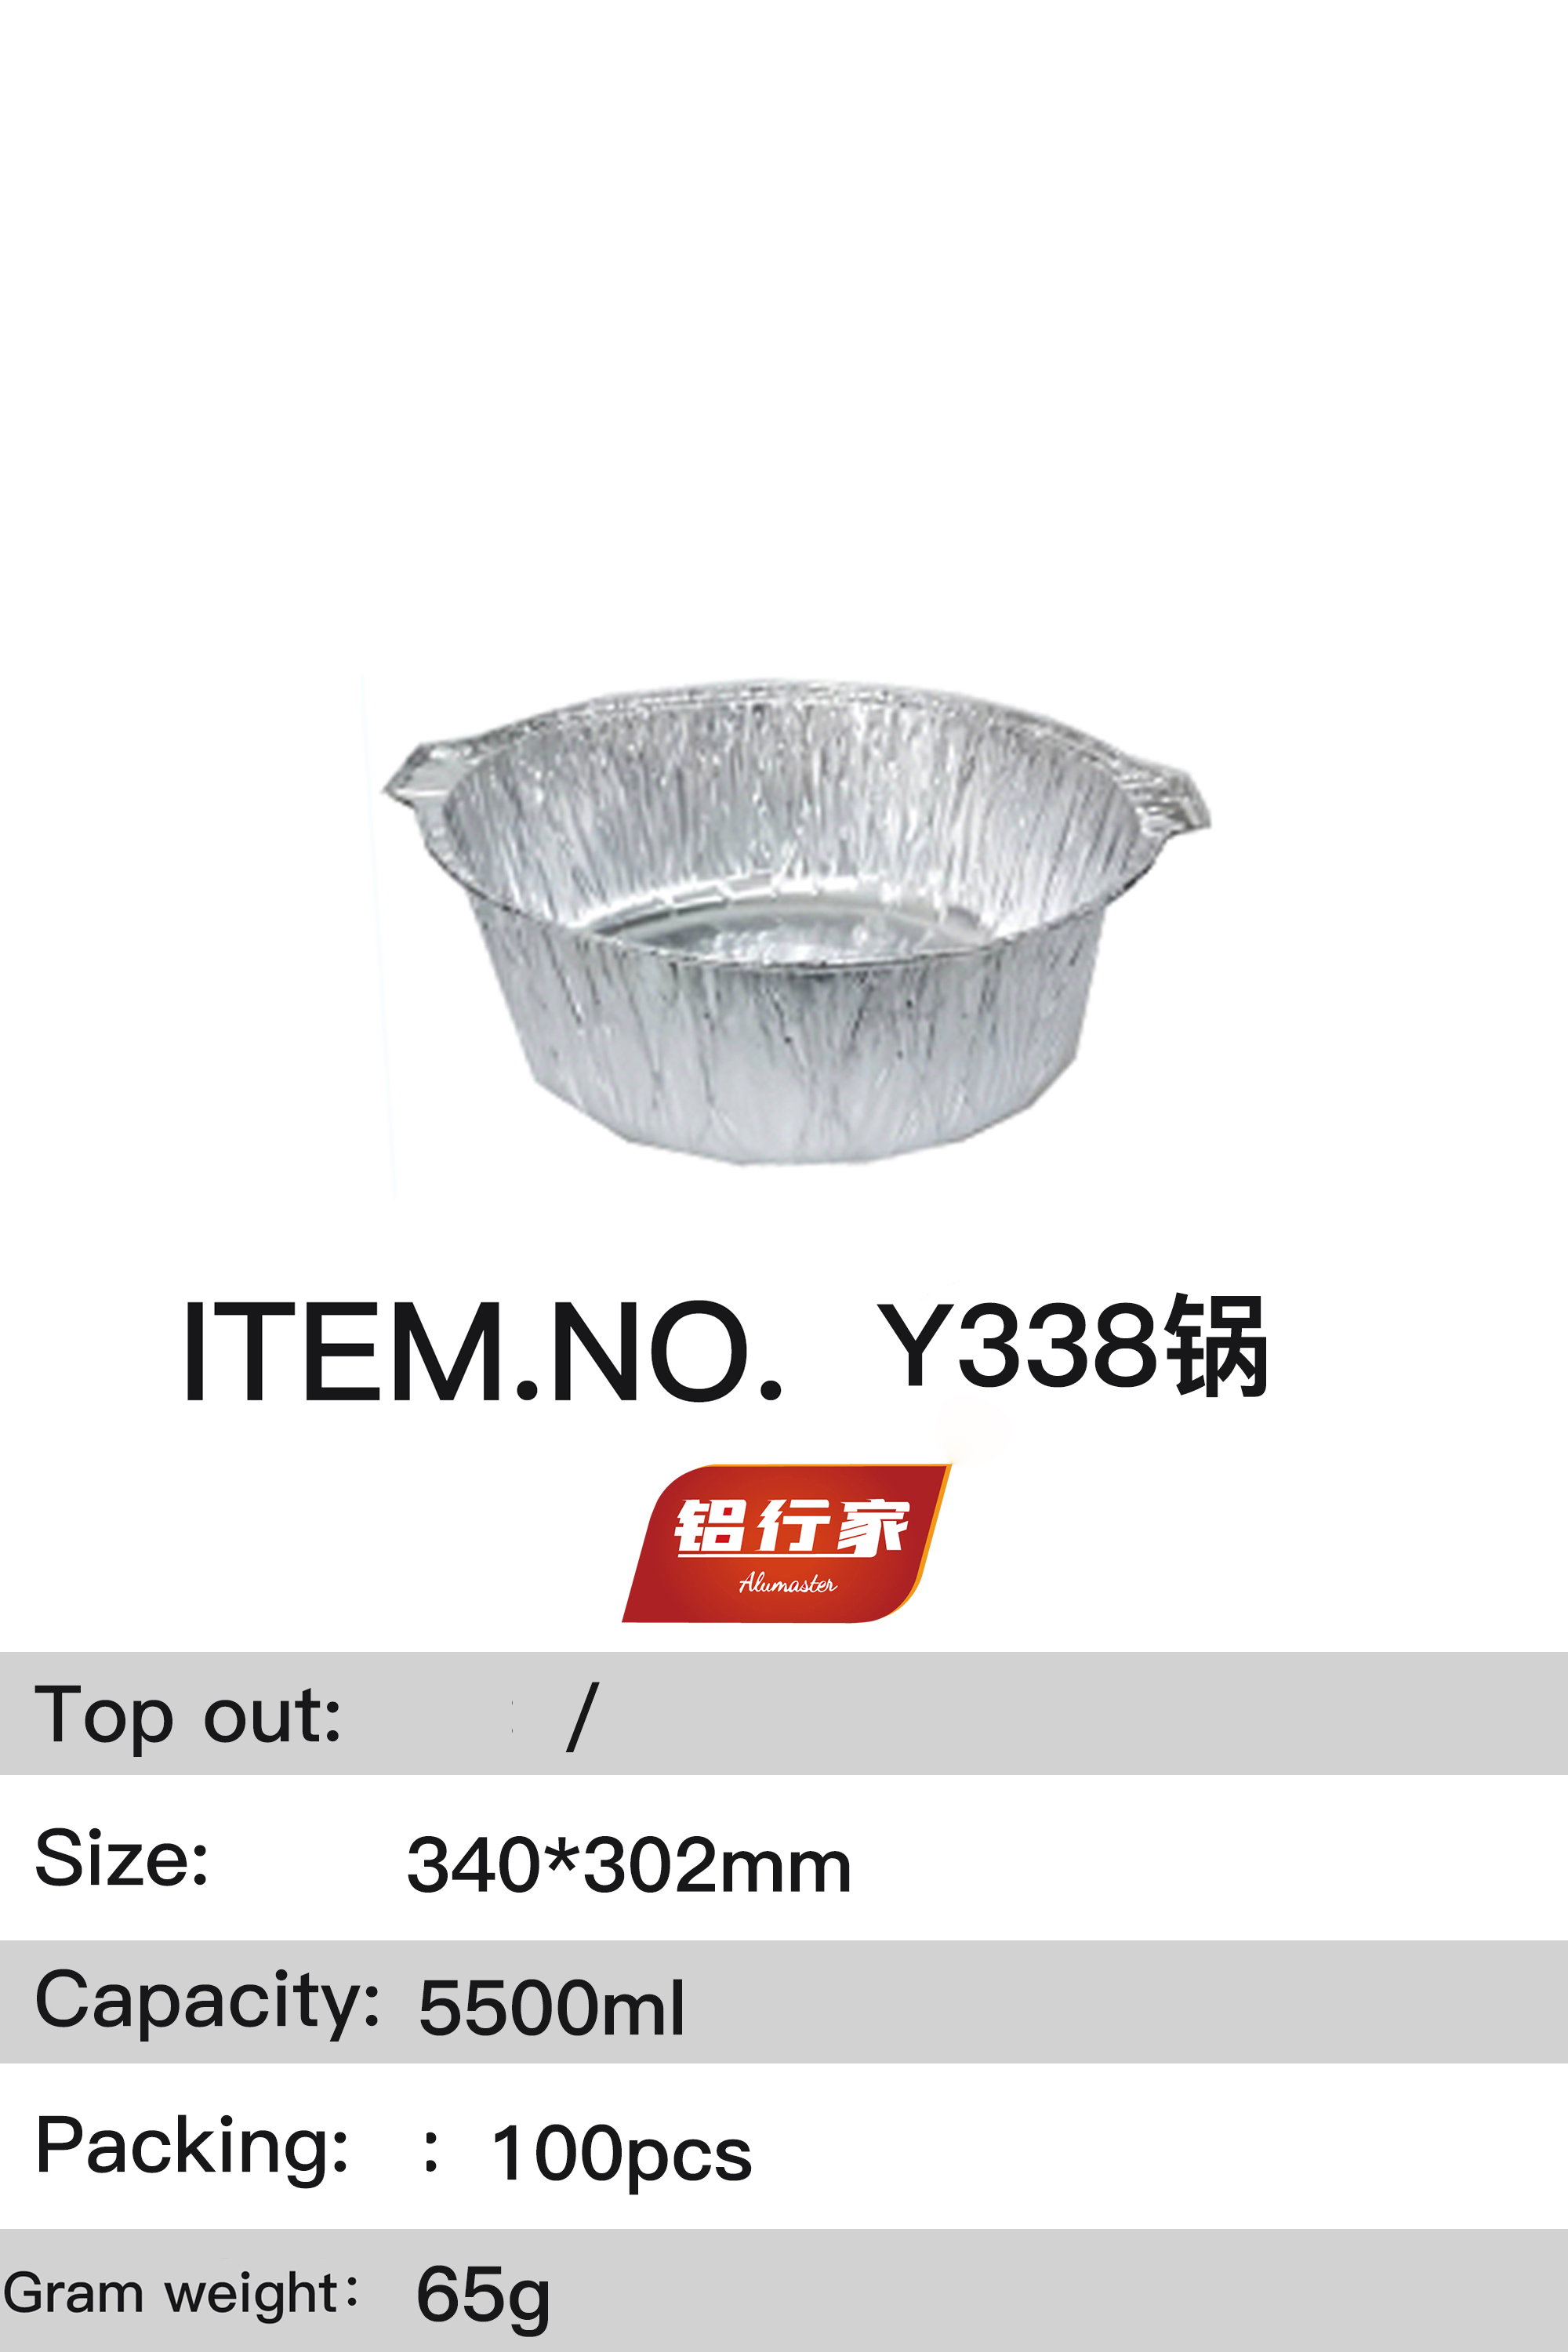 铝行家铝箔餐盒Y338锅